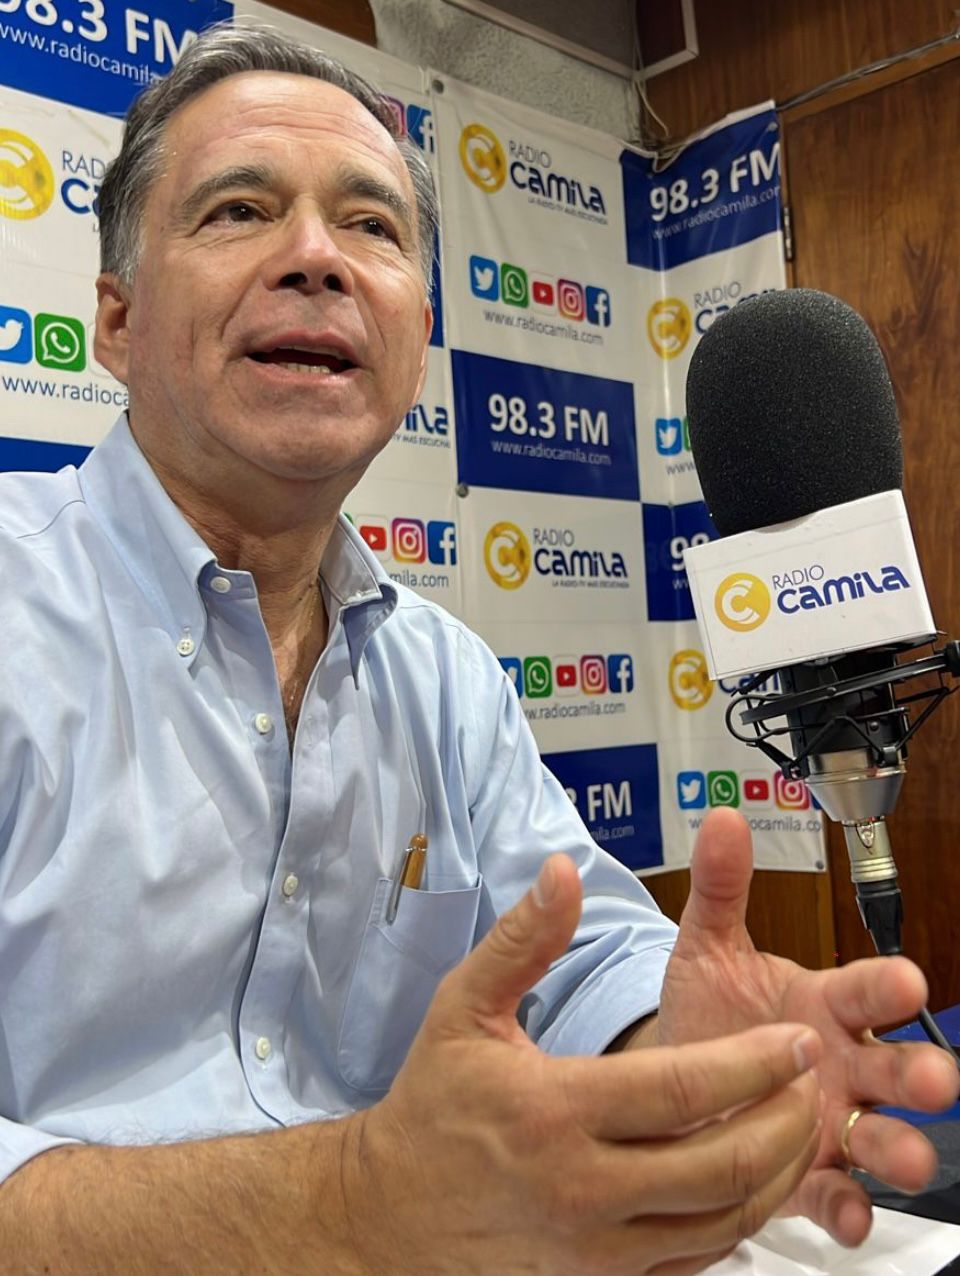 Iván Norambuena triunfa en encuesta y es el candidato a Alcalde por Los Ángeles de Chile Vamos